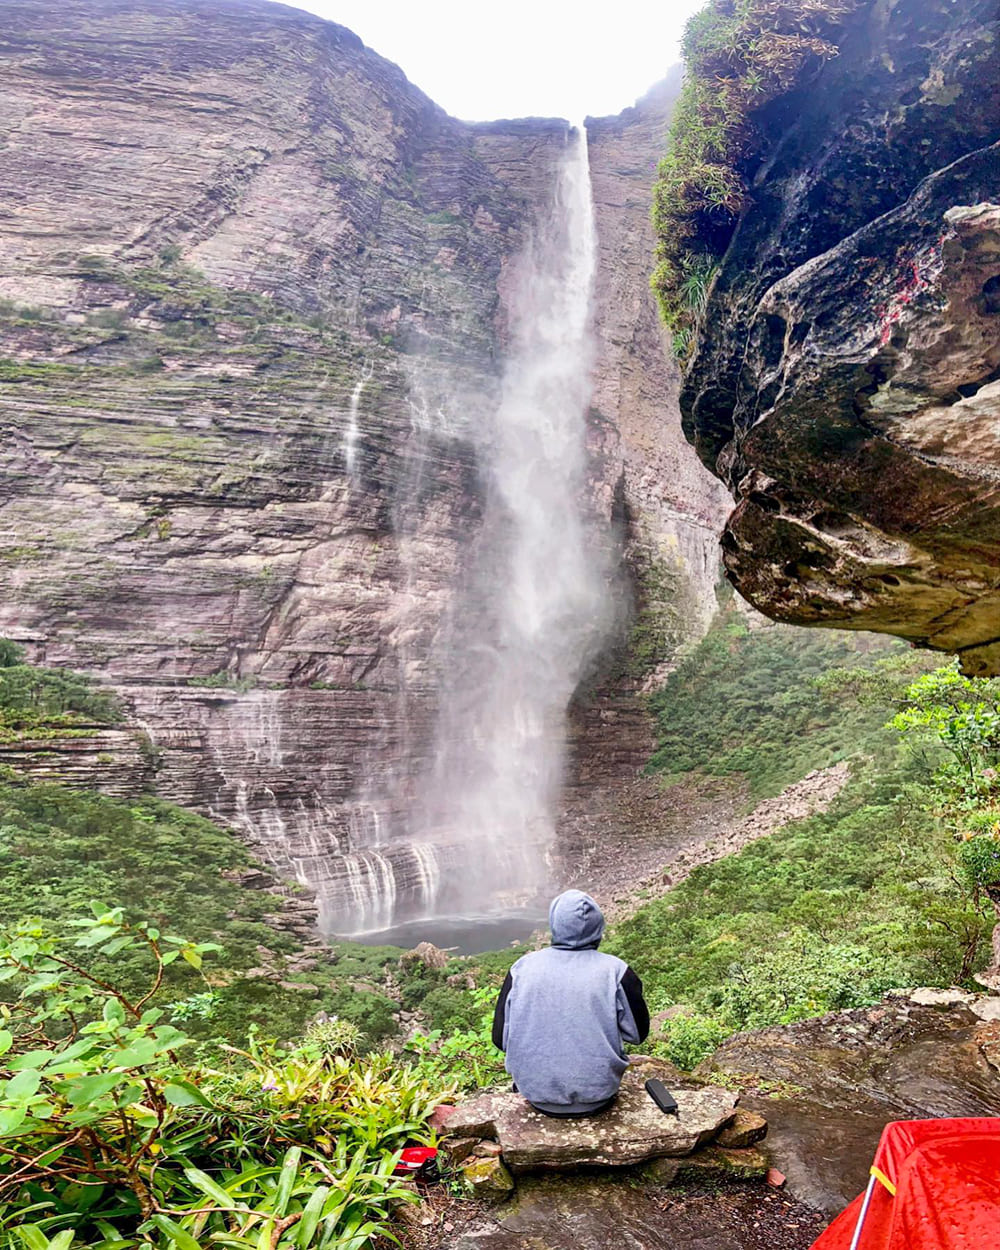 Fumaça watervallen meerdaagse trekking - wat te doen in chapada diamantina